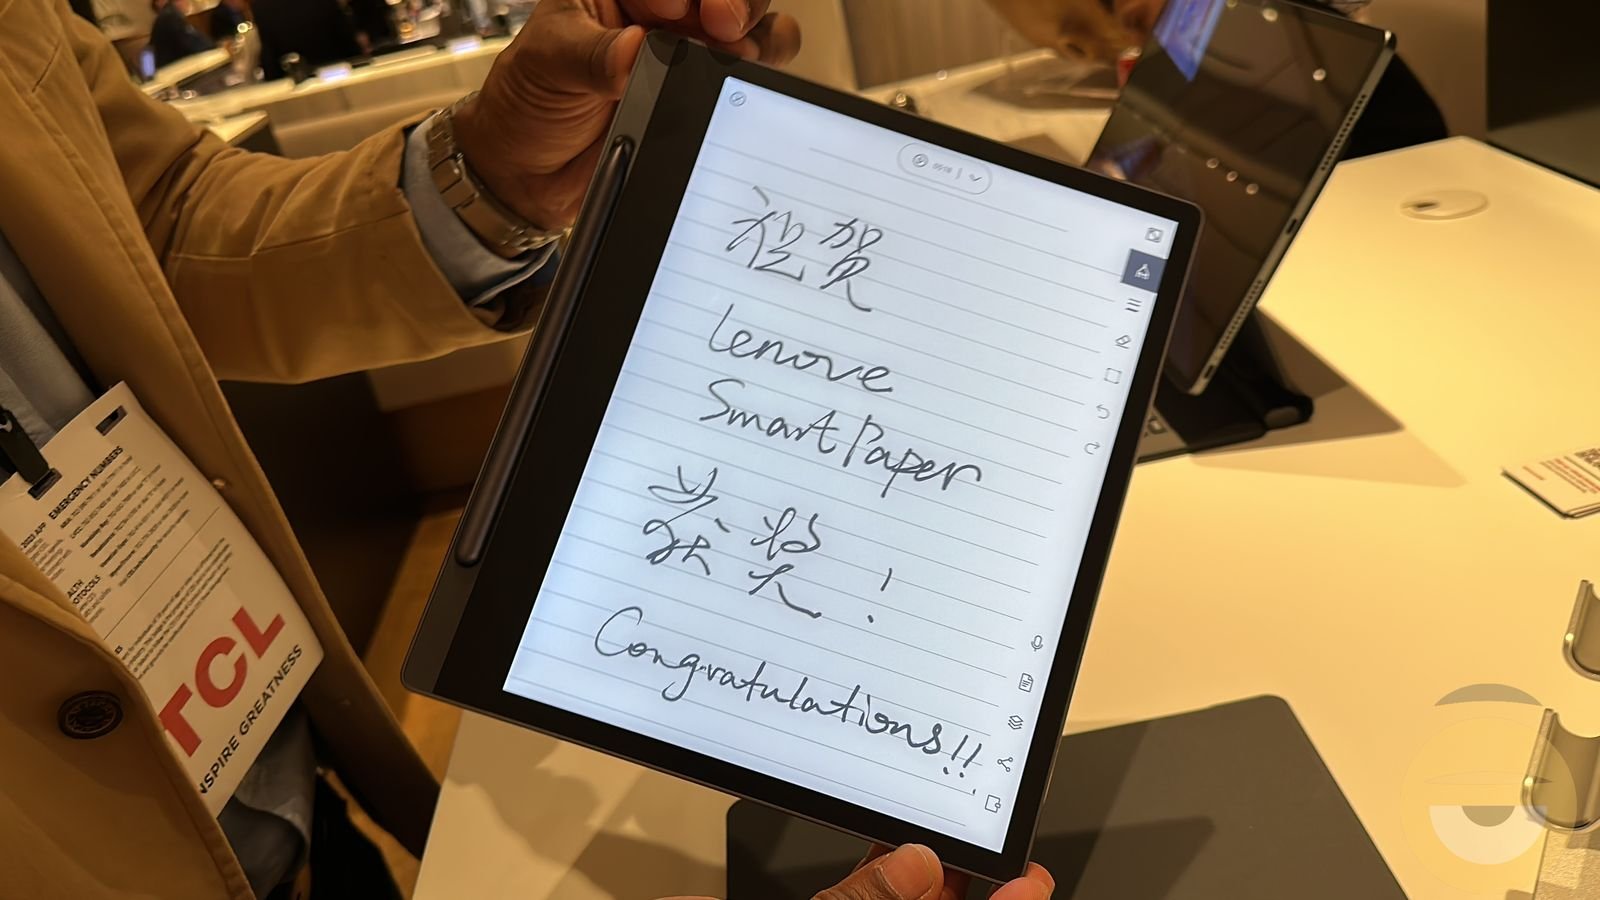 Περισσότερες πληροφορίες για "Το δικό της ψηφιακό σημειωματάριο με e-ink παρουσίασε η Lenovo, το Smart Paper"